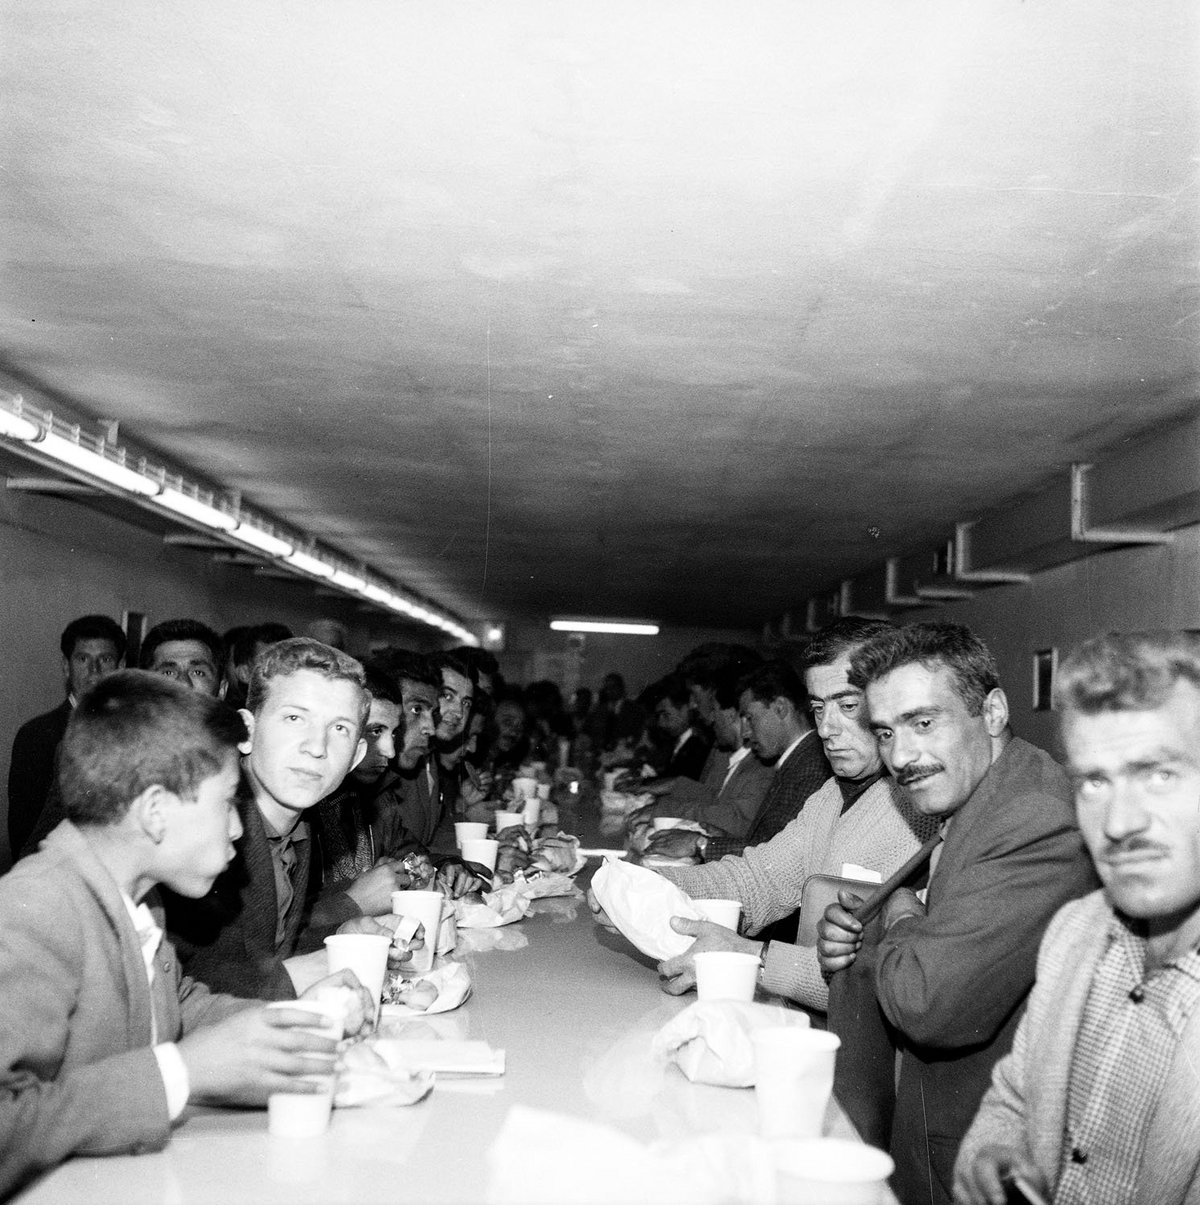 Schwarz-Weiß-Fotografie einer Gruppe Männern, die an einem Tisch essen und trinken.